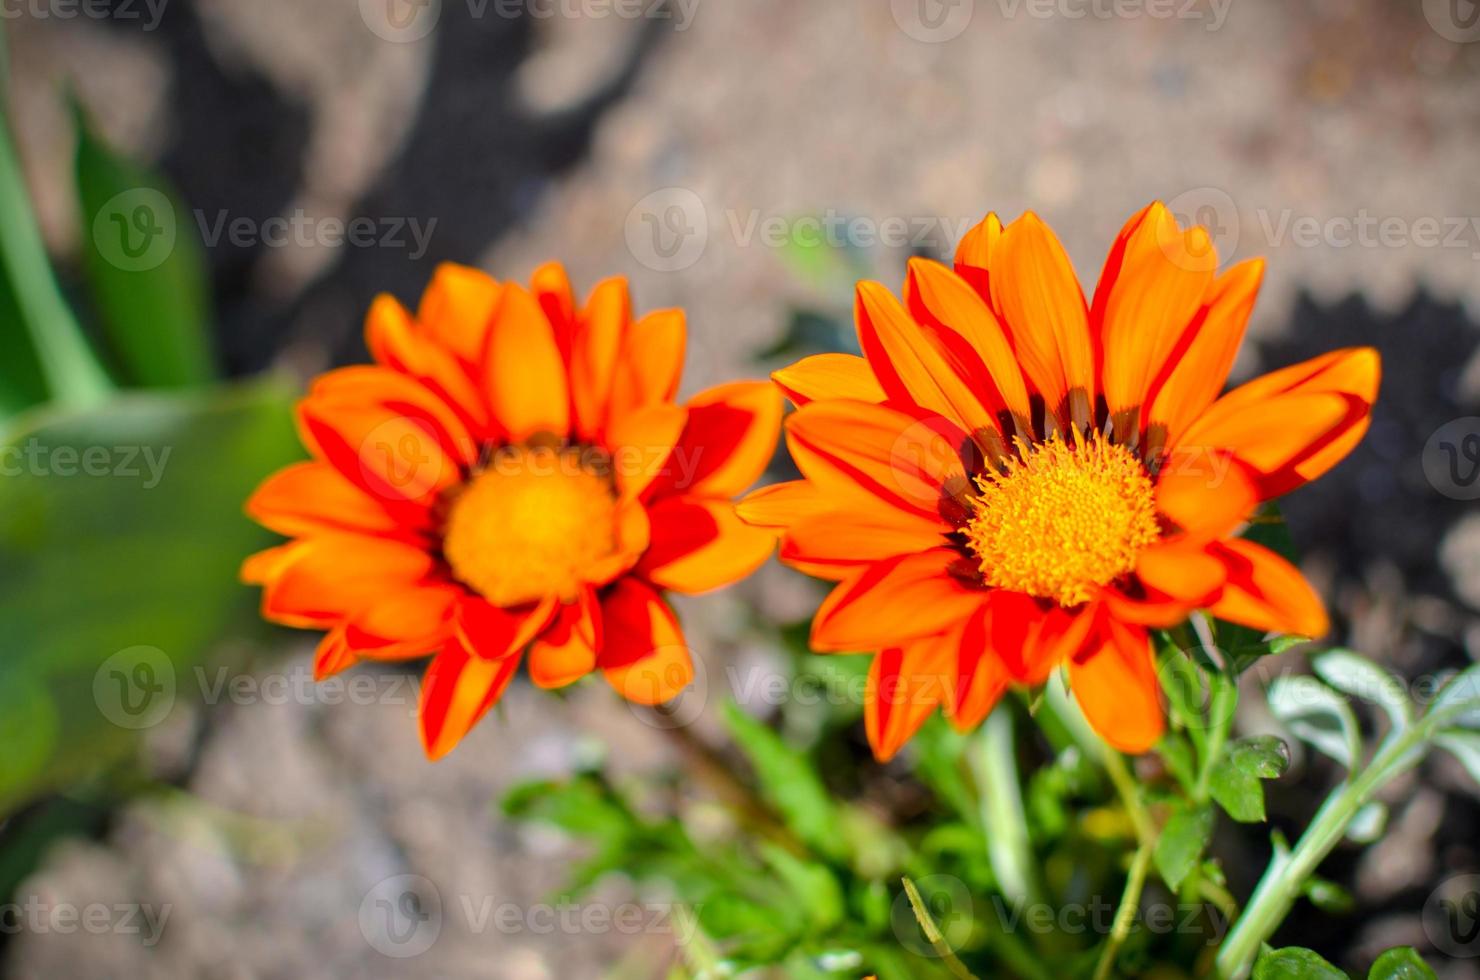 Primer plano de dos flores de Gazania rigens con pétalos de naranja foto